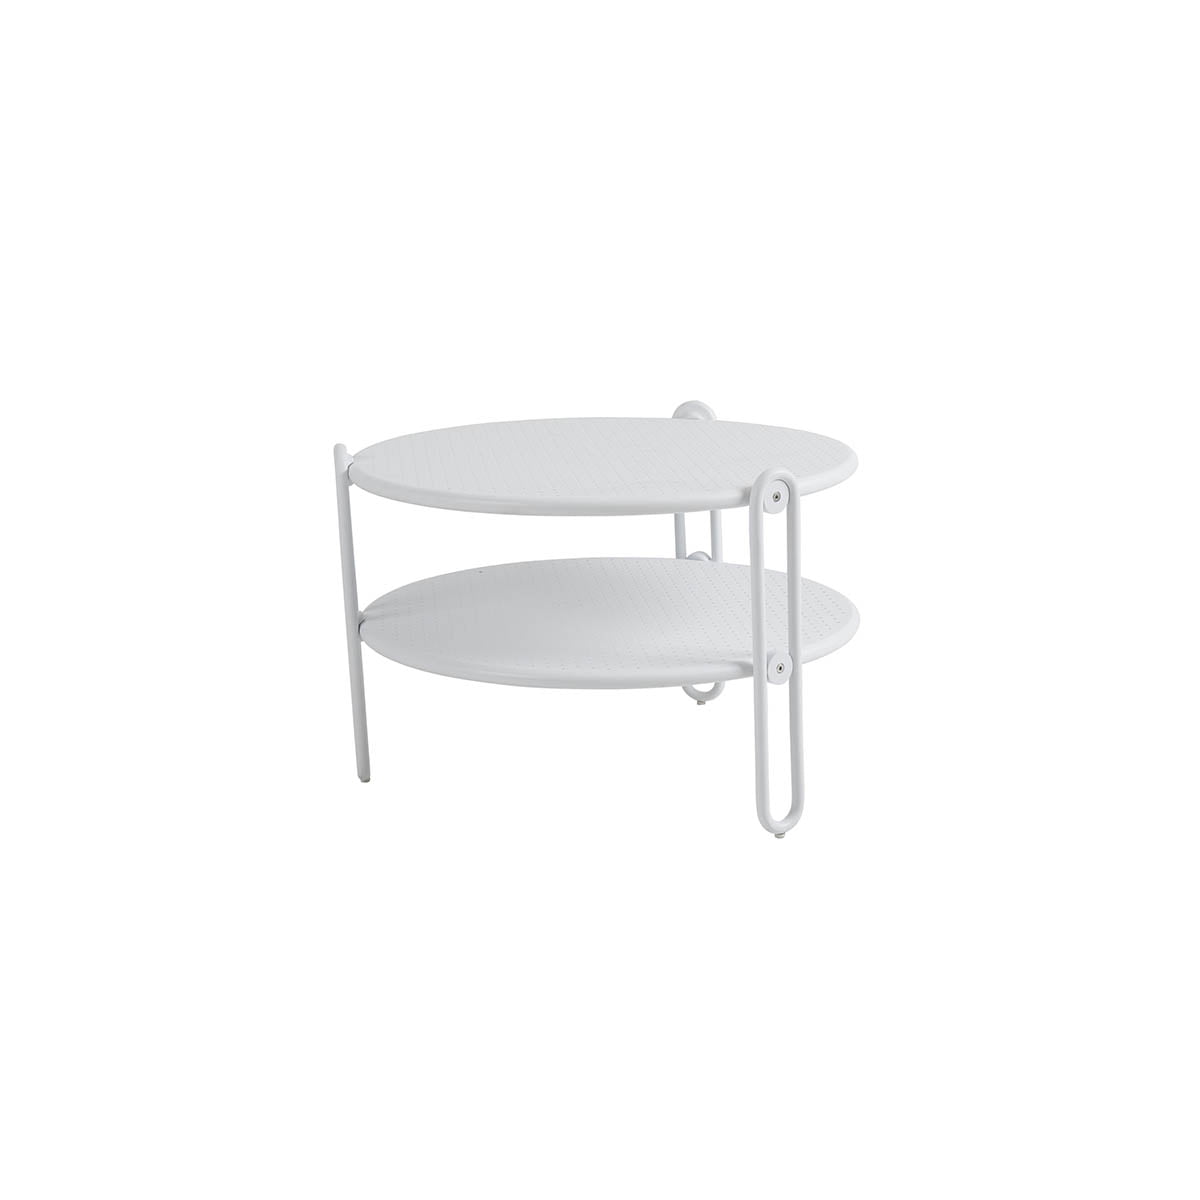 Blixt rundt bord i aluminium med diameter på 65 cm. Bordet har perforert bordplate, fine designdetaljer